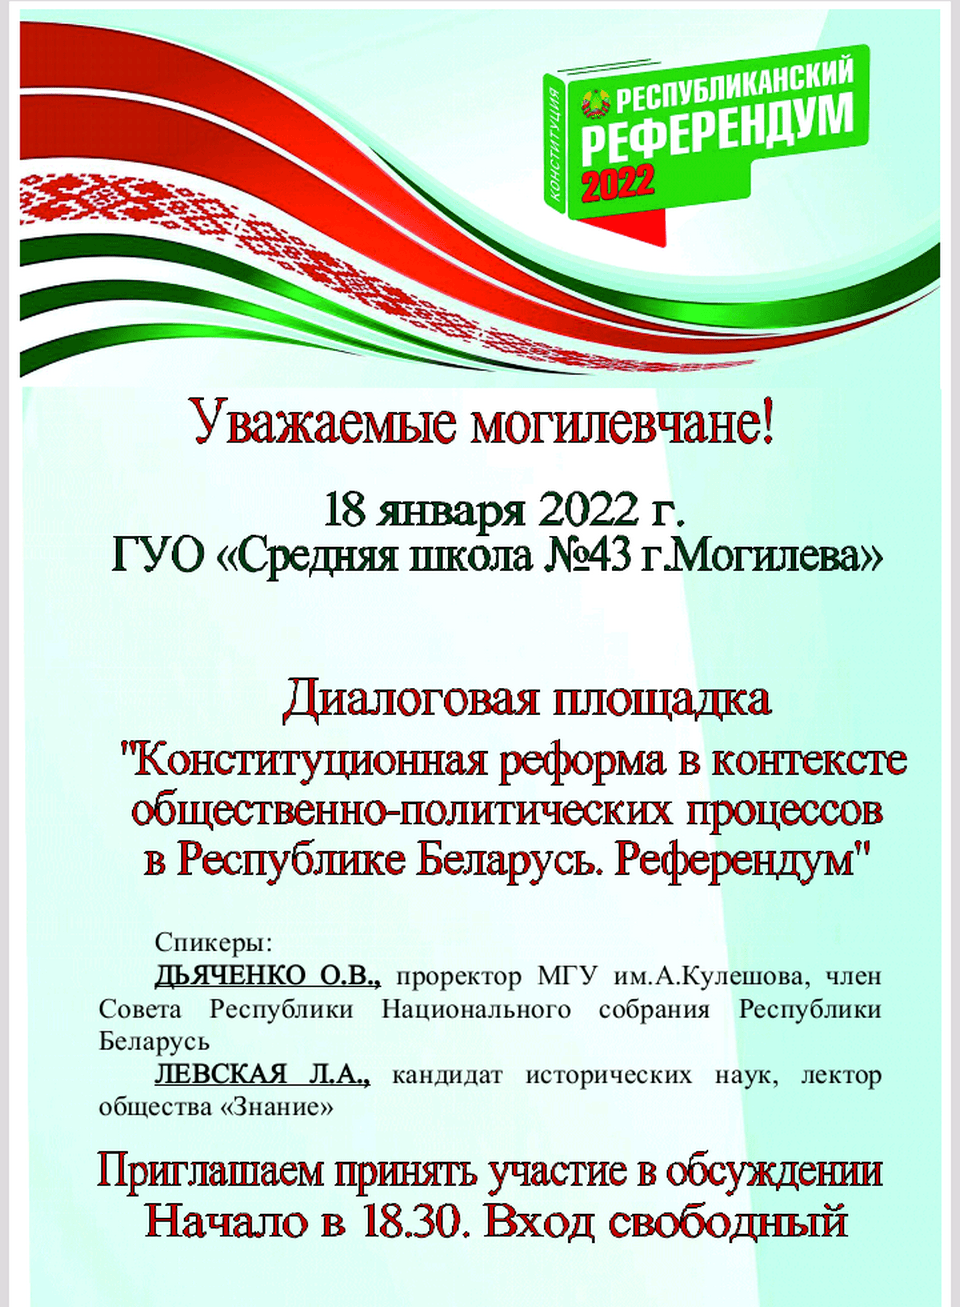 Диалоговая площадка по обсуждению проекта изменений и дополнений Конституции состоится 18 января в Могилеве